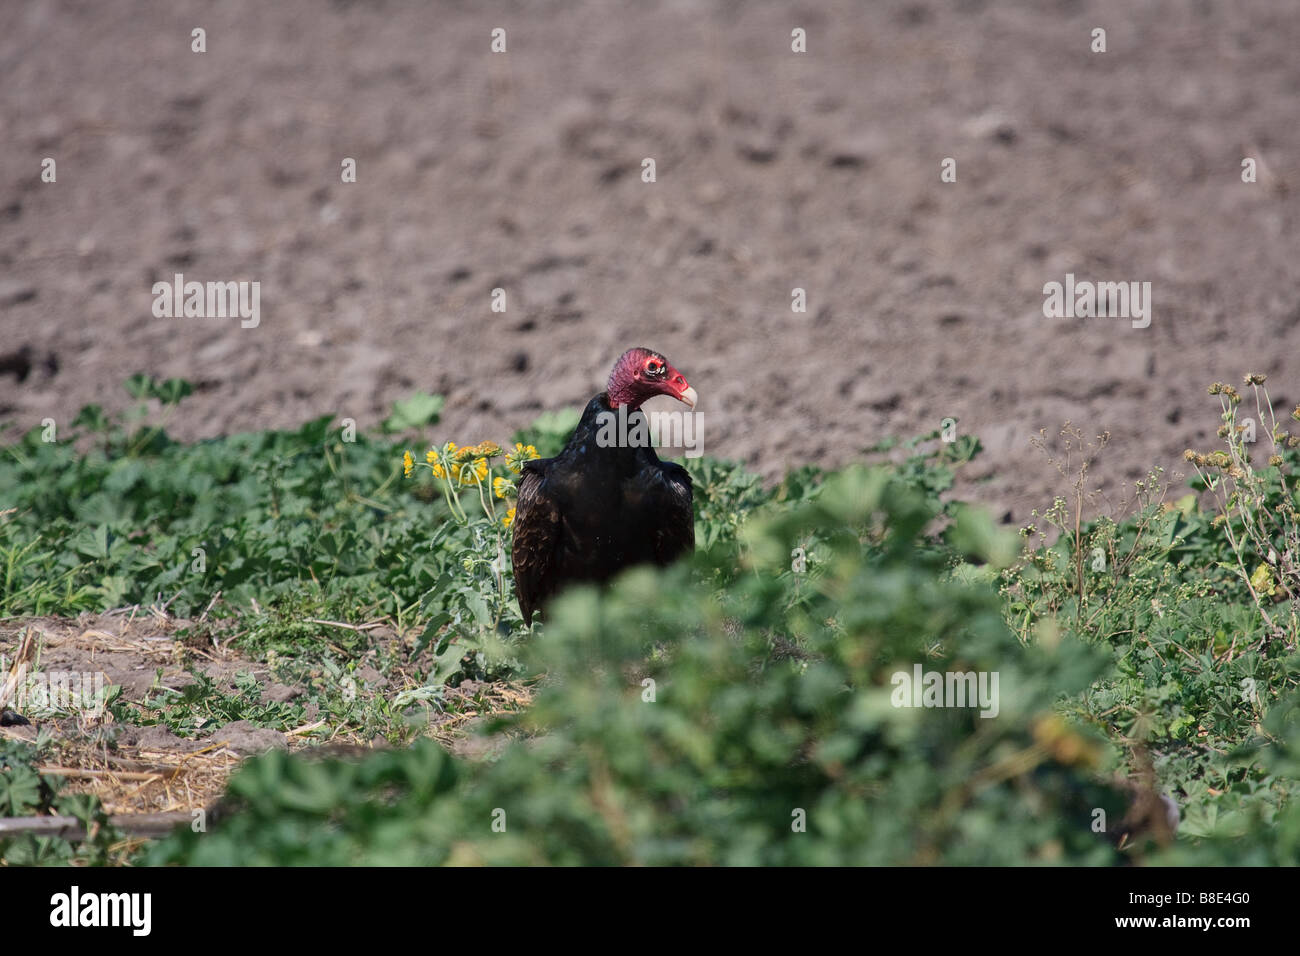 Turkey Buzzard eating roadkill. Stock Photo